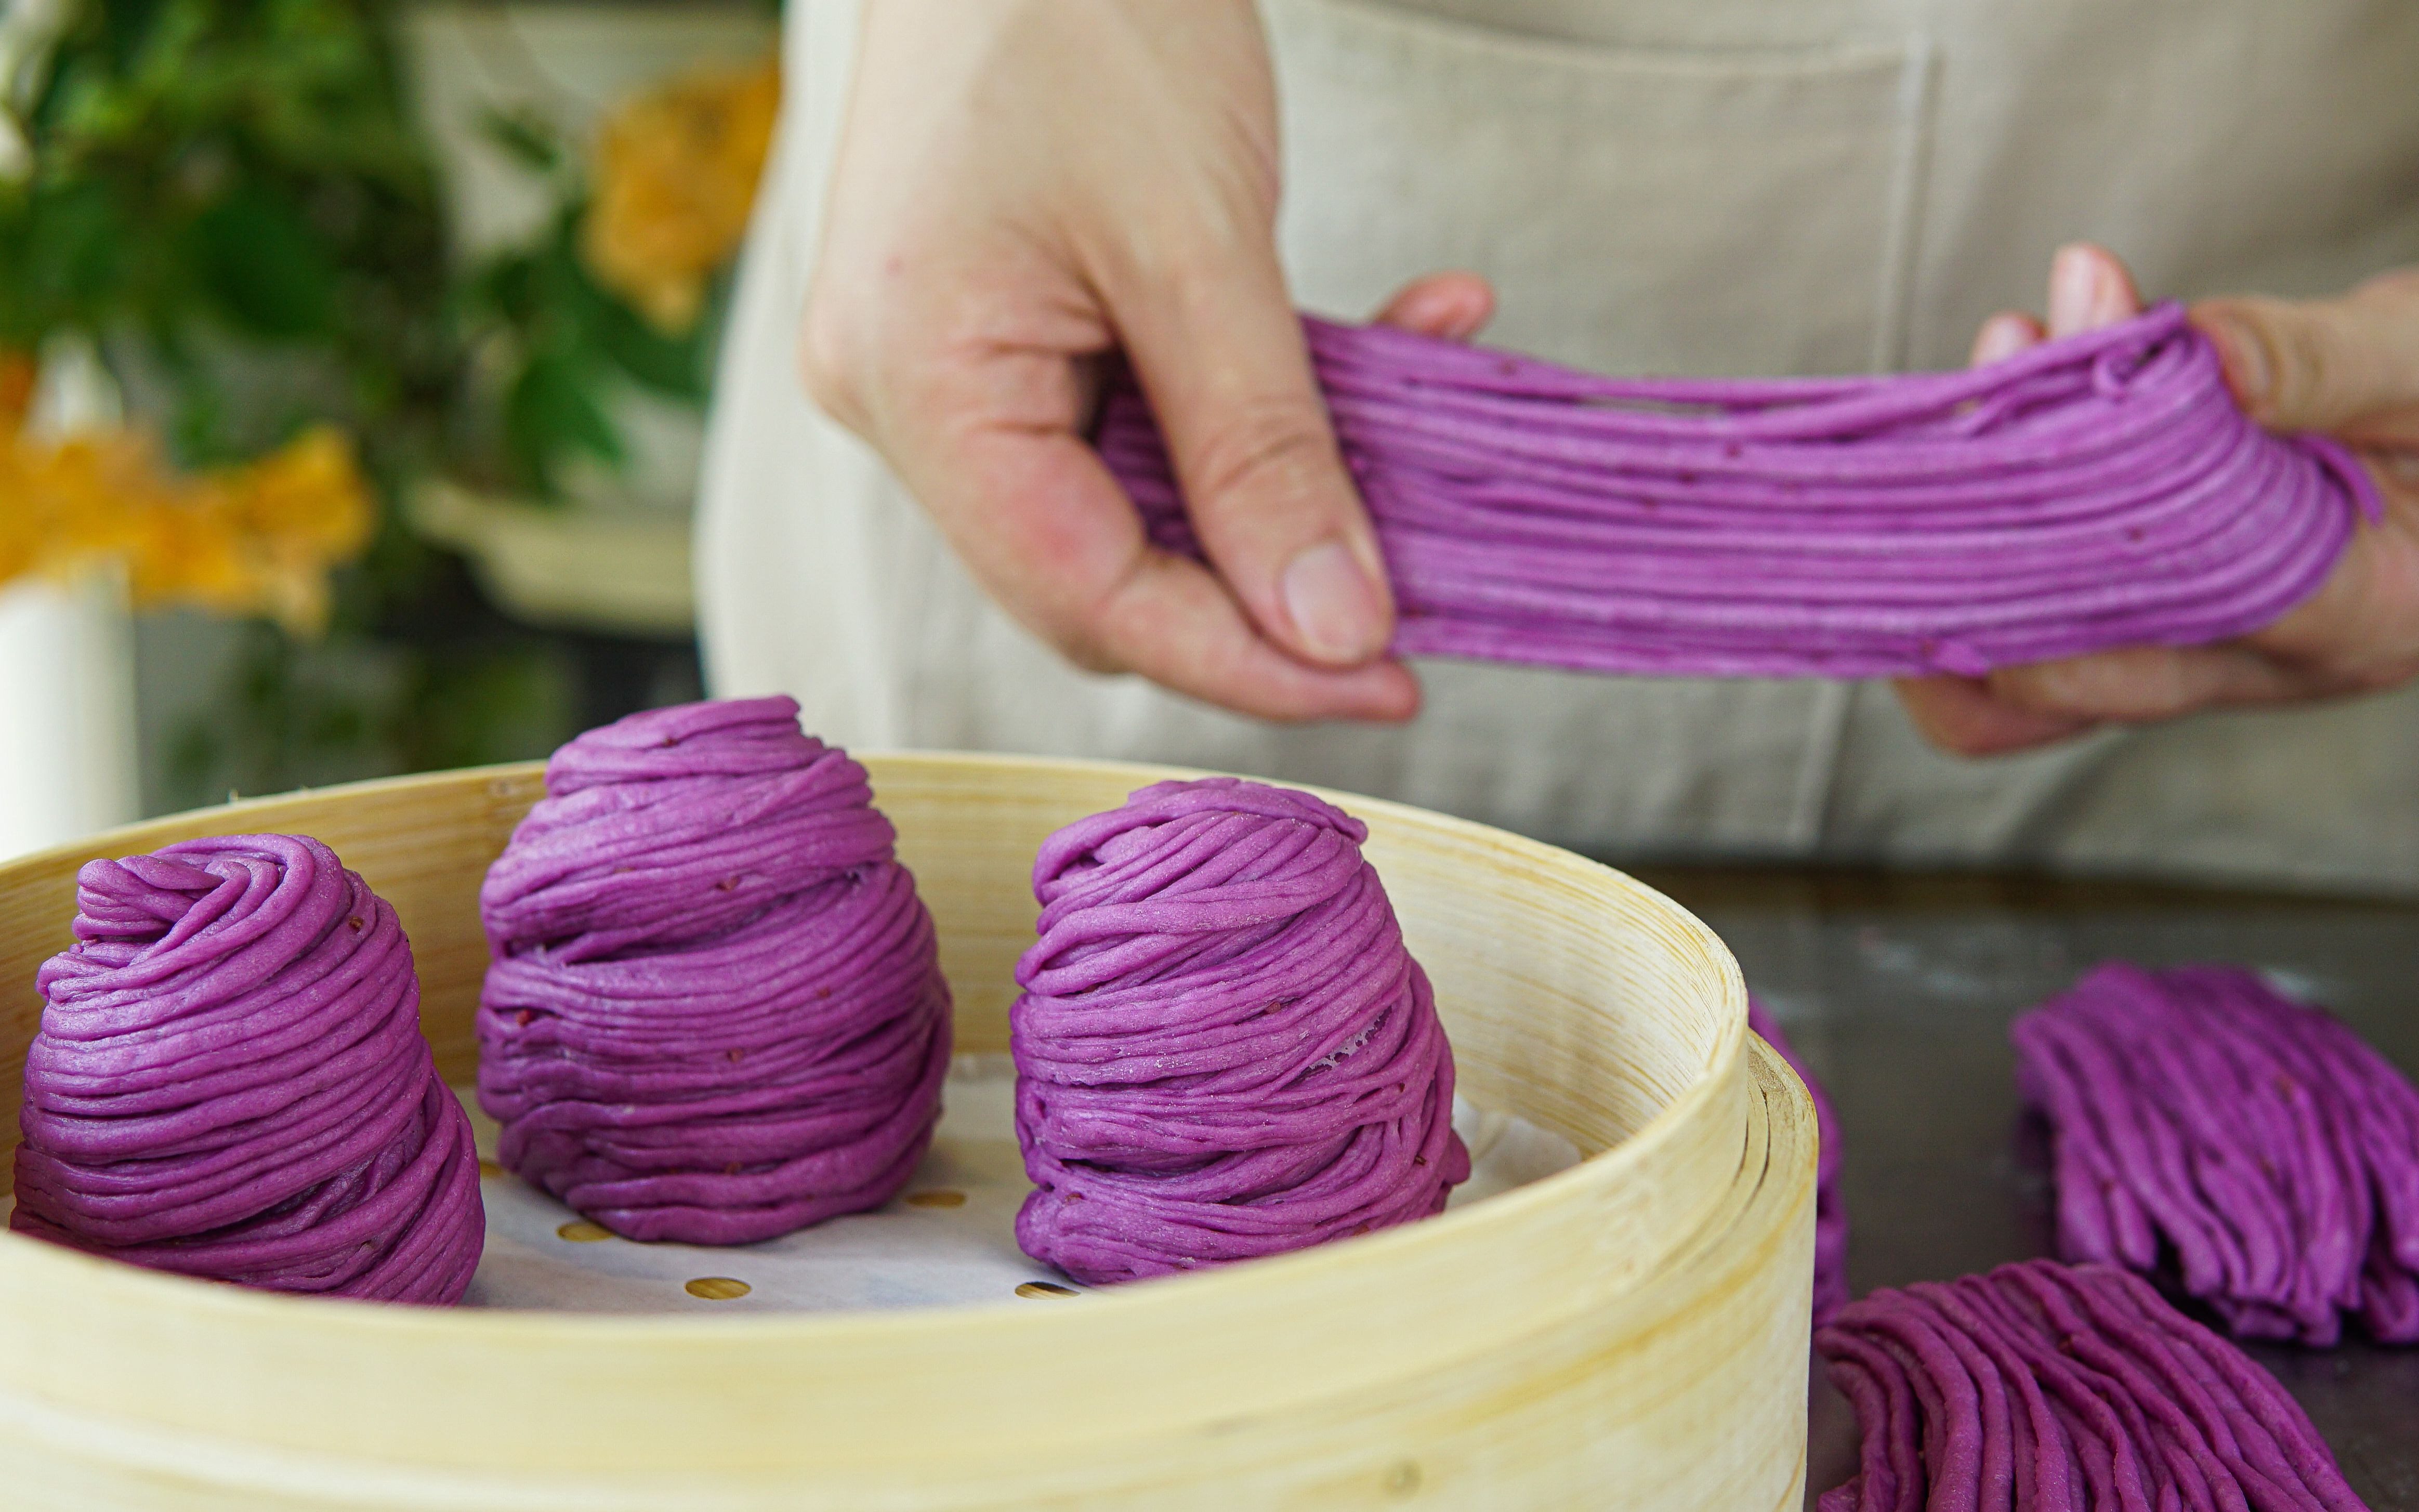 紫薯花卷的做法_【图解】紫薯花卷怎么做如何做好吃_紫薯花卷家常做法大全_品味儿快乐_豆果美食